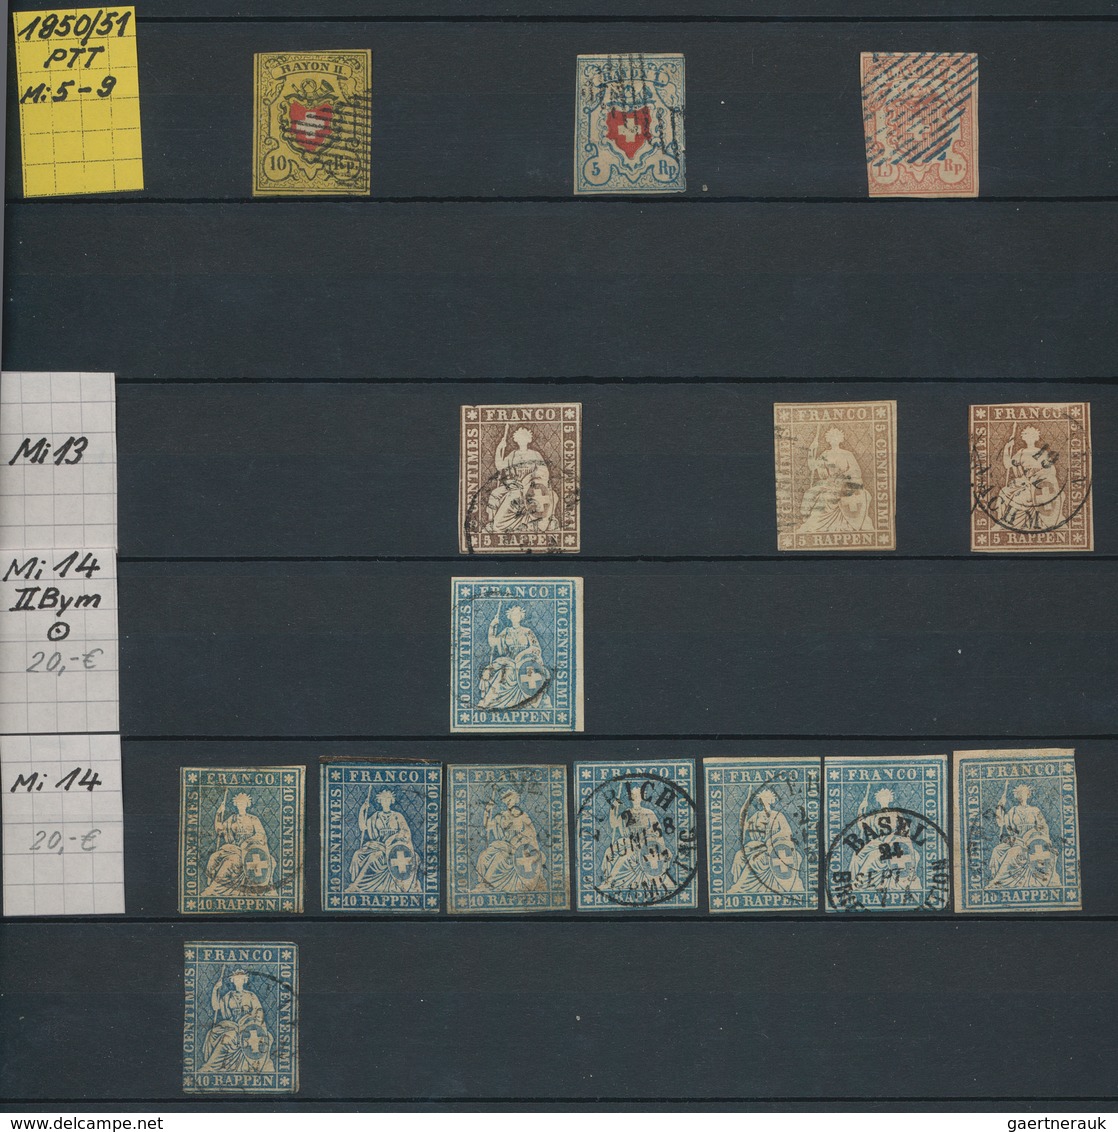 Schweiz: 1850-1907: Kleine Sammlung Ab Rayons Bis Stehende Helvetia In Unterschiedlicher Erhaltung M - Lotes/Colecciones